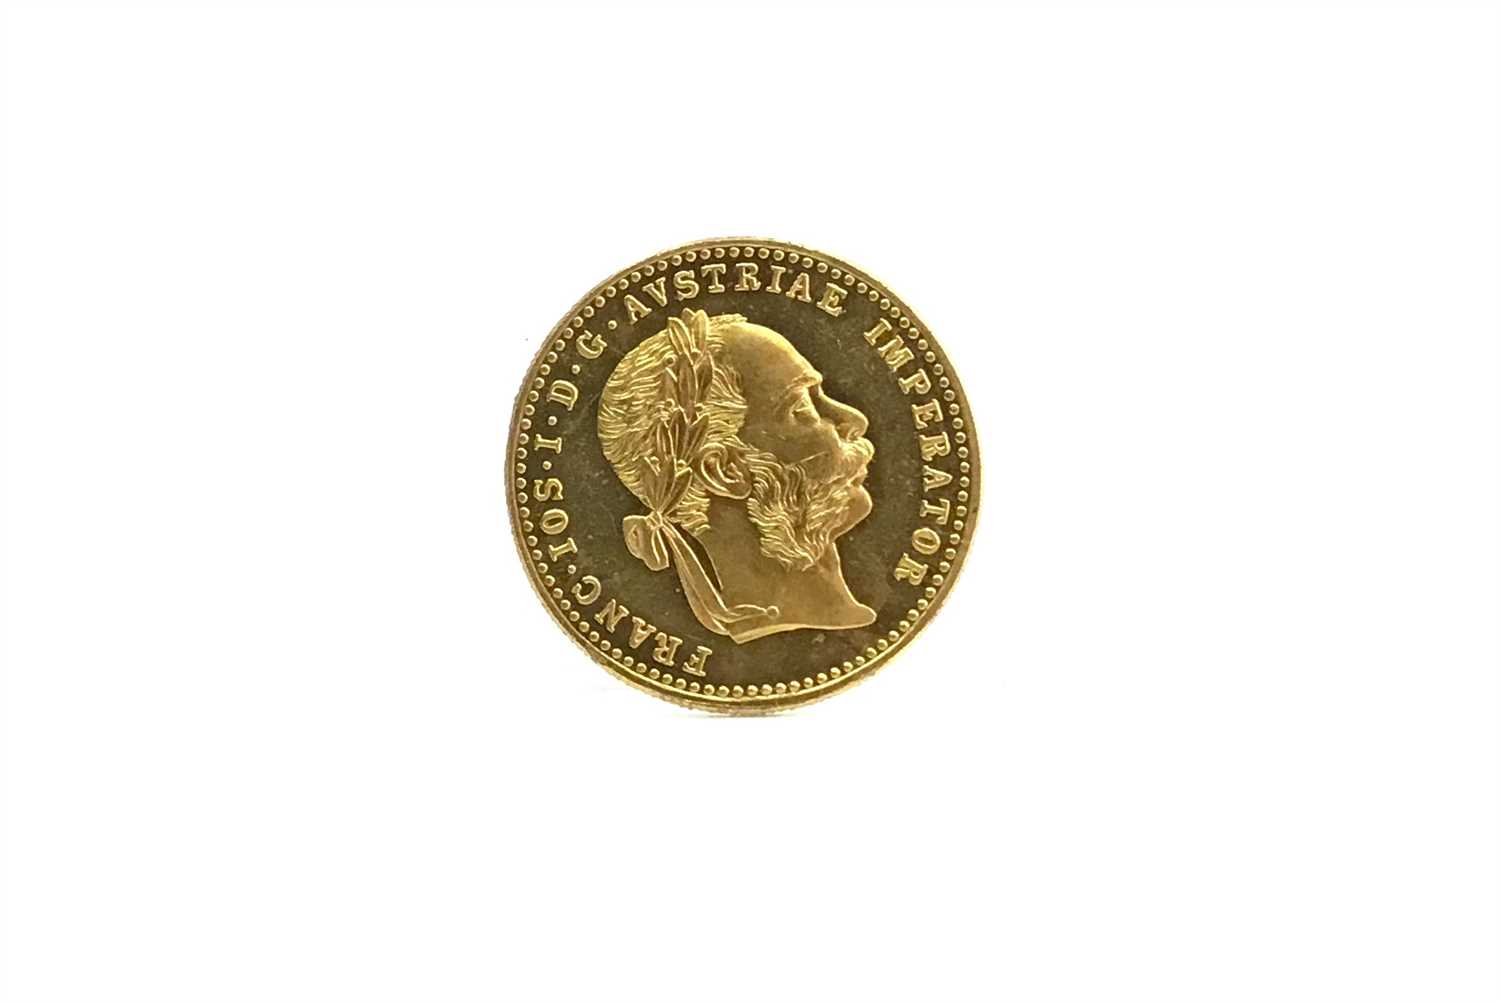 Lot 569 - AN AUSTRIAN GOLD 1 DUCAT RESTRIKE COIN, 1915